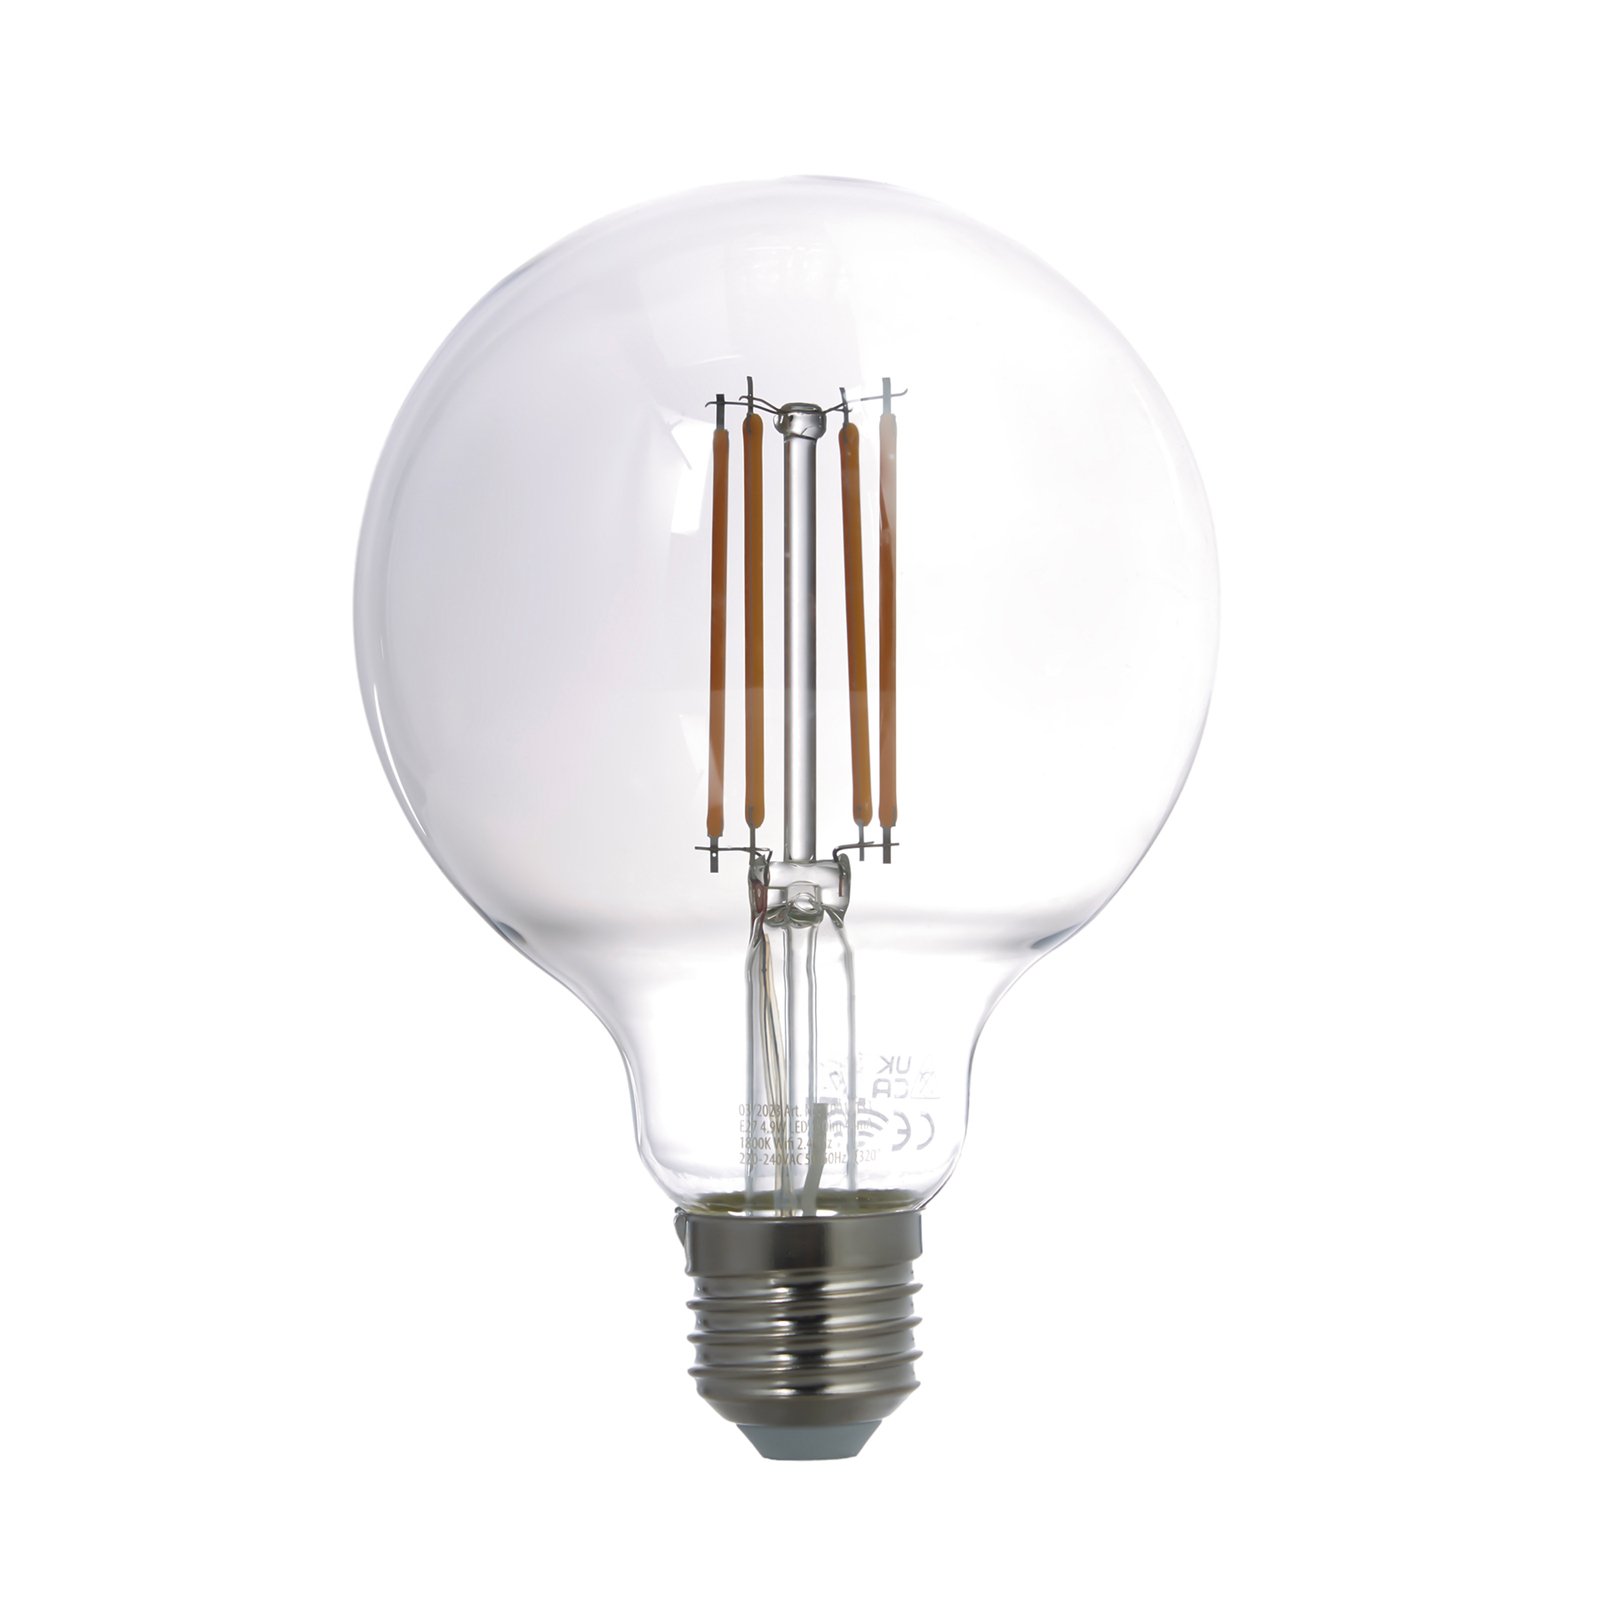 LUUMR Smart LED-Globelampe E27 rauchgrau 4,9W Tuya WLAN